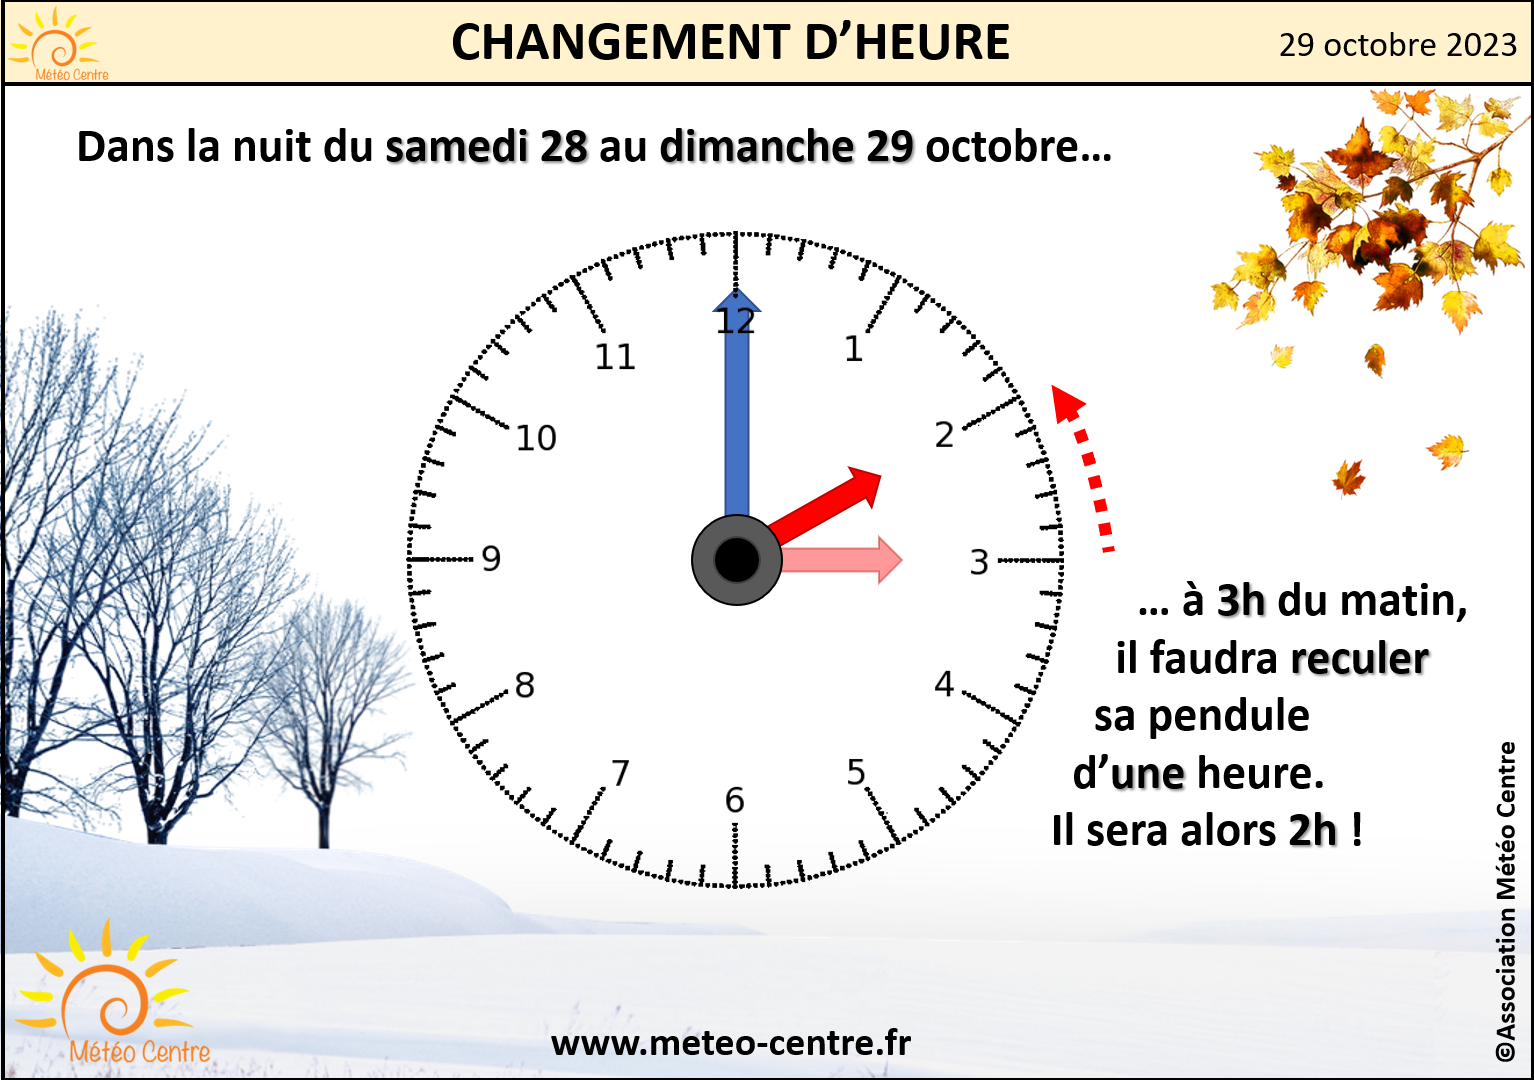 CHANGEMENT D’HEURE : PASSAGE A L’HEURE D’HIVER CE WEEK-END DU 28 ET 29 ...